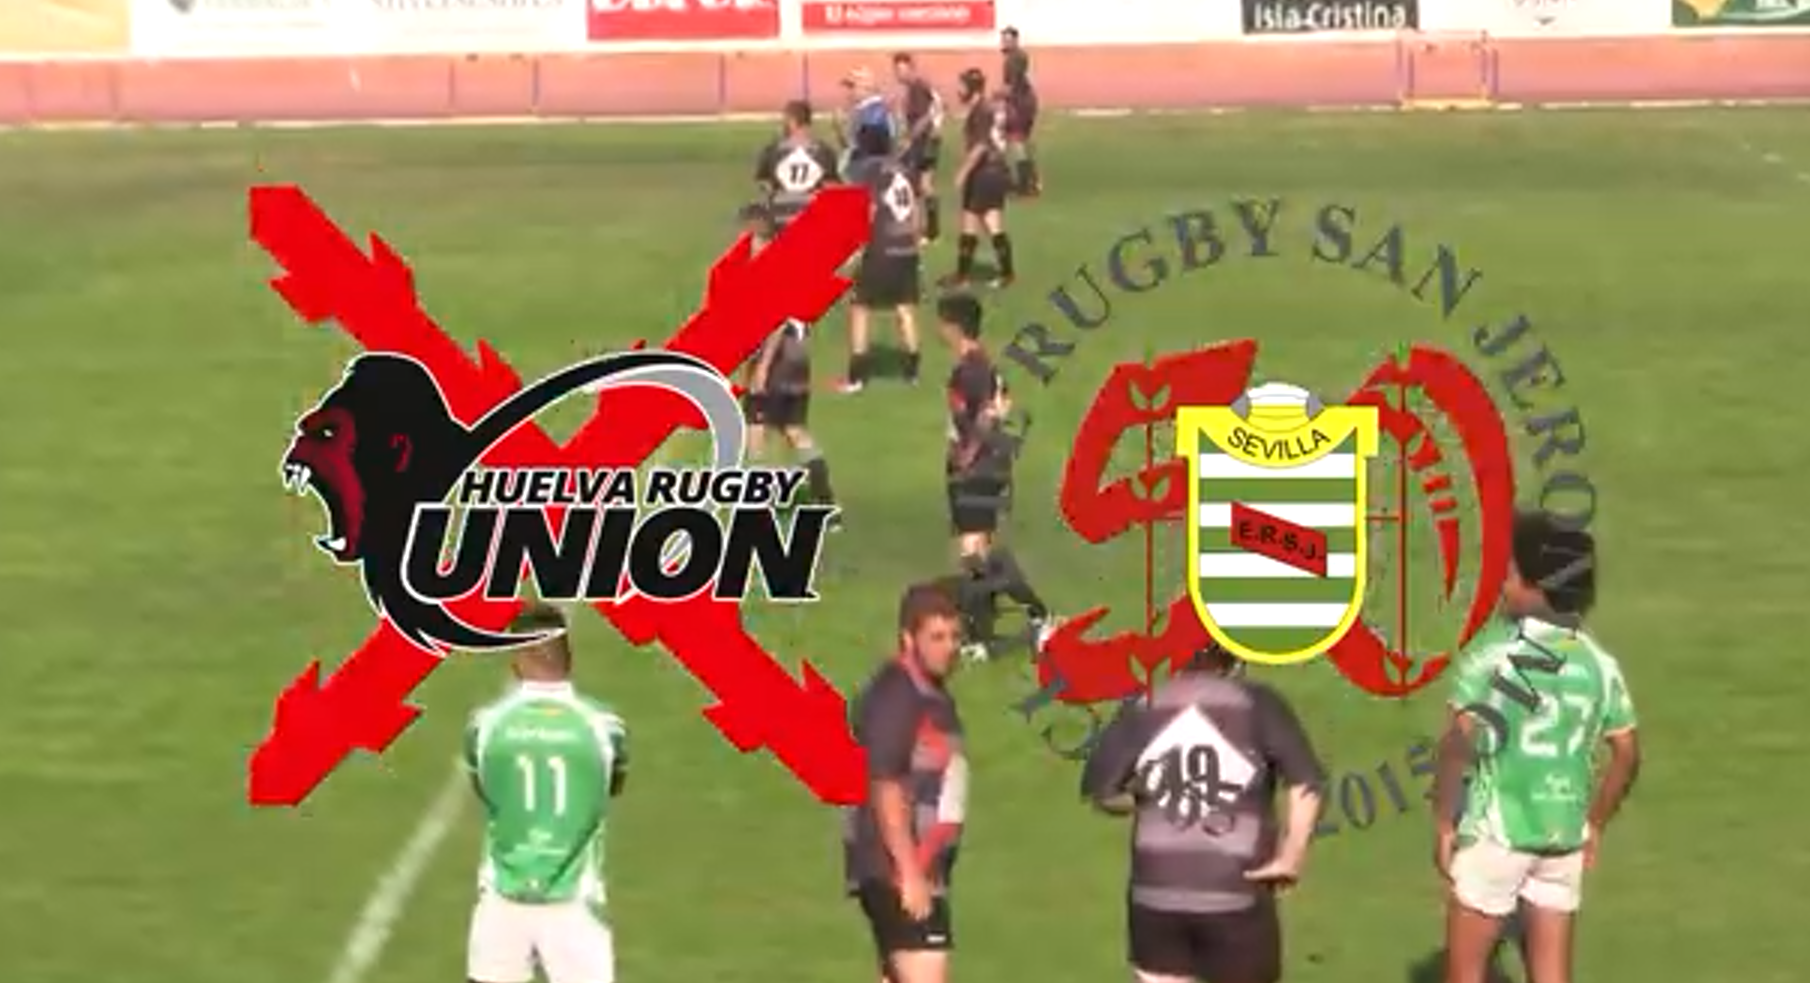 Huelva rugby